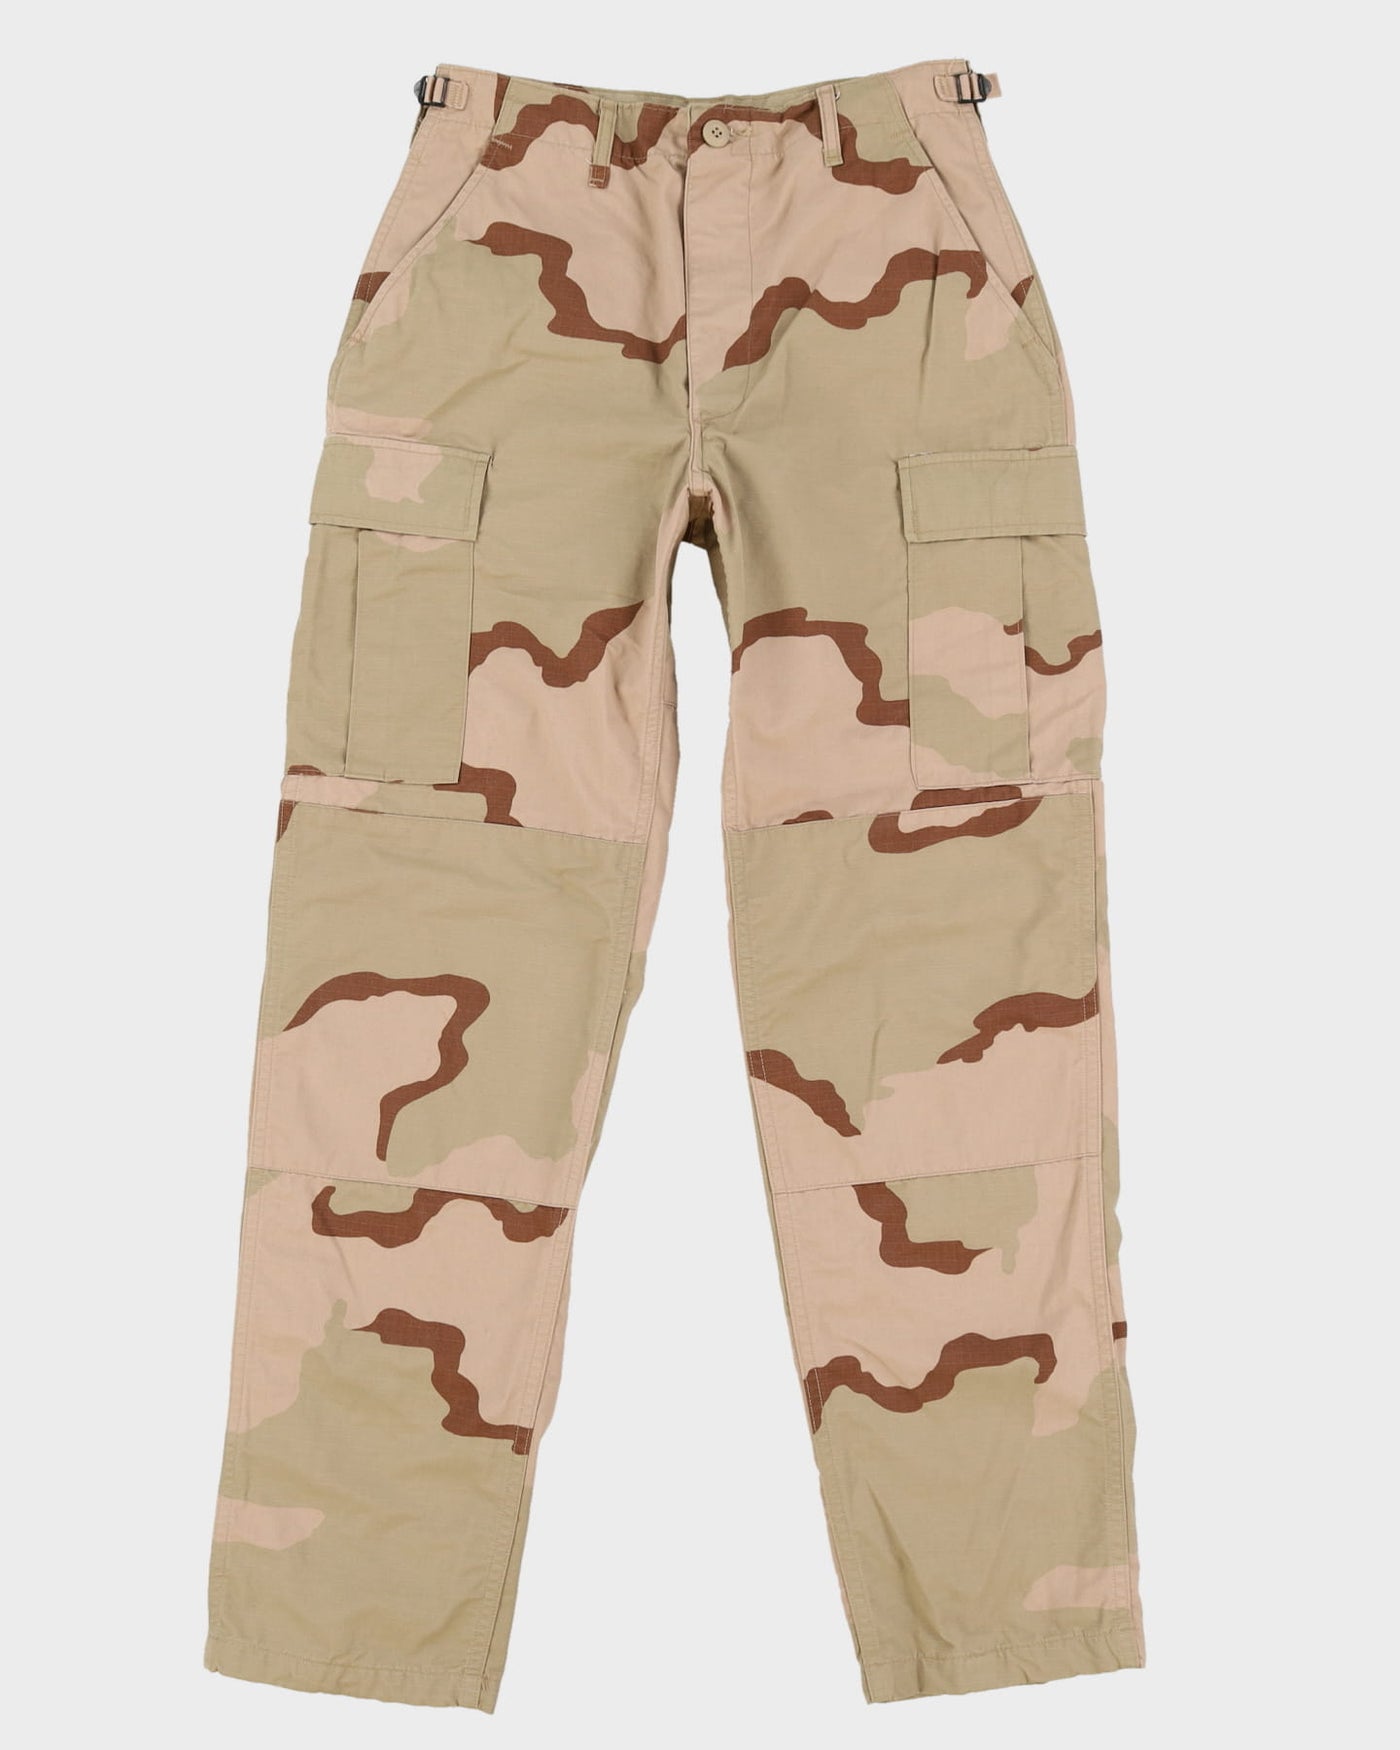 Vintage 90s US Military Desert Camo Combat Trousers - W30 L33